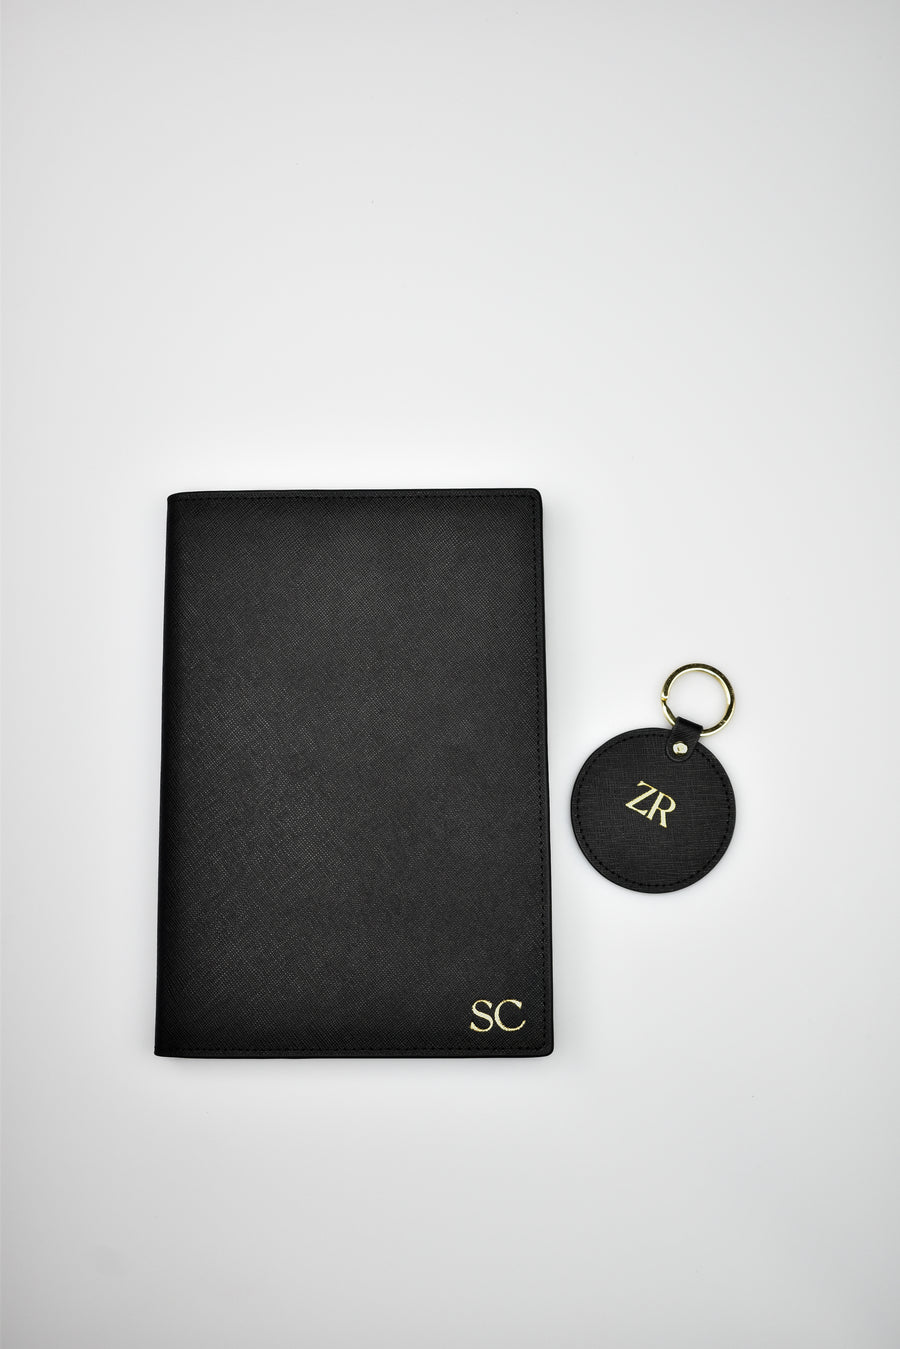 Notebook & Keyring Bundle - The Best Kind